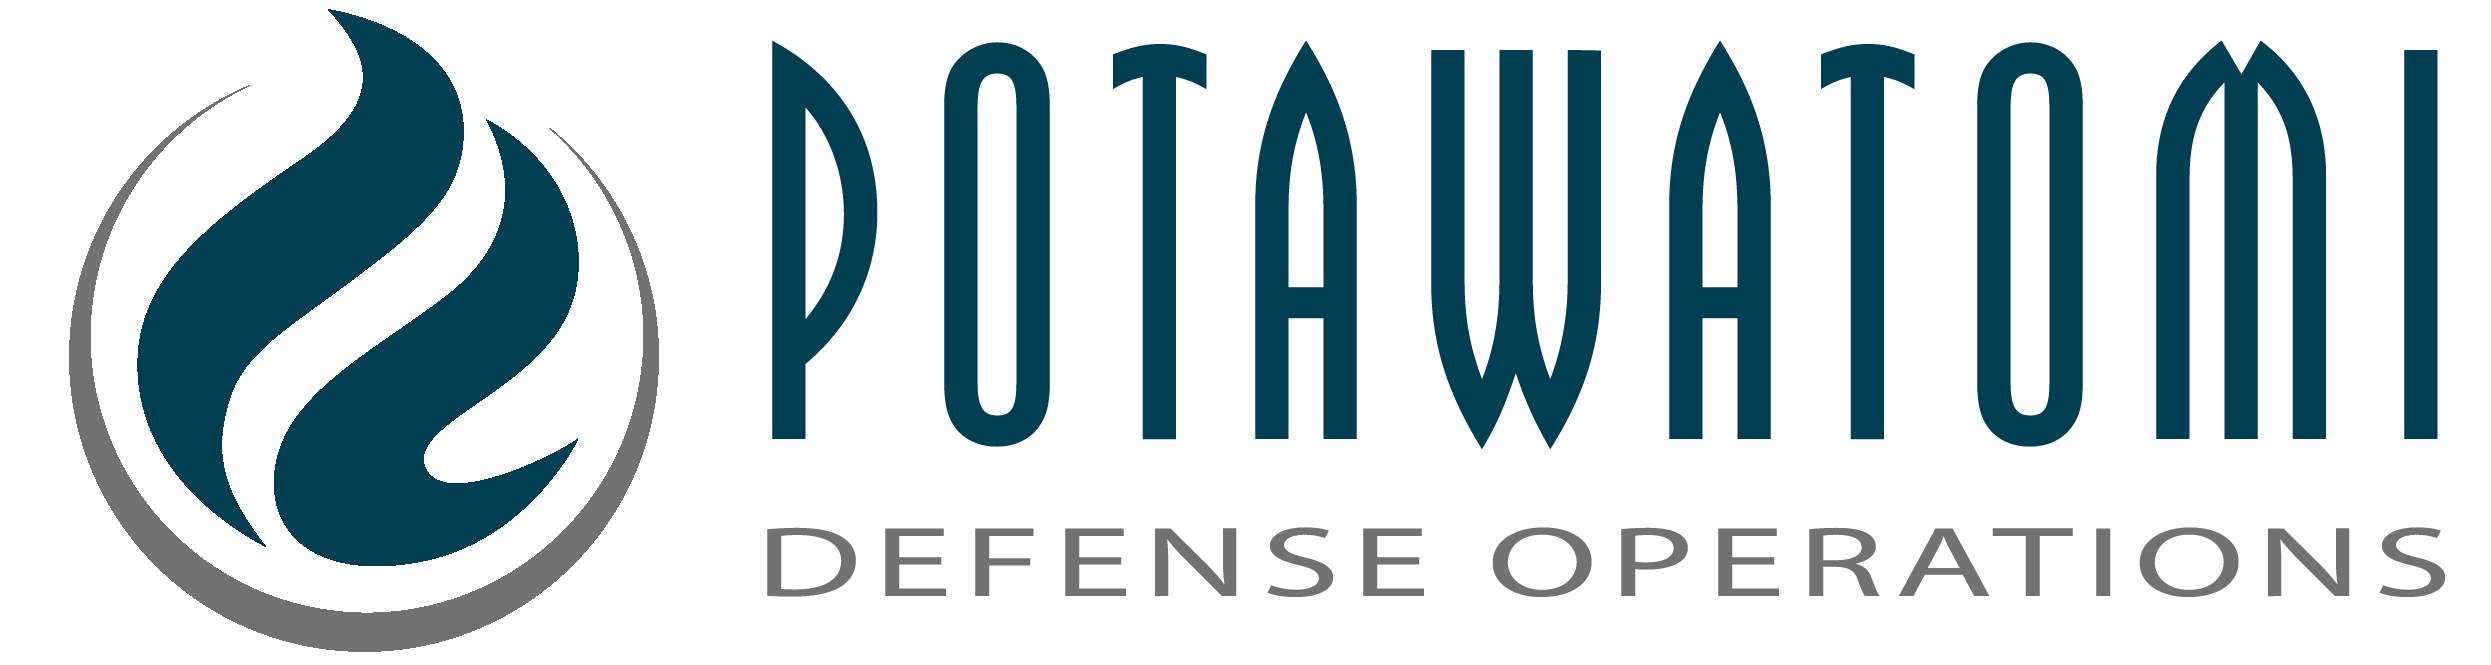 *Potawatomi Defense